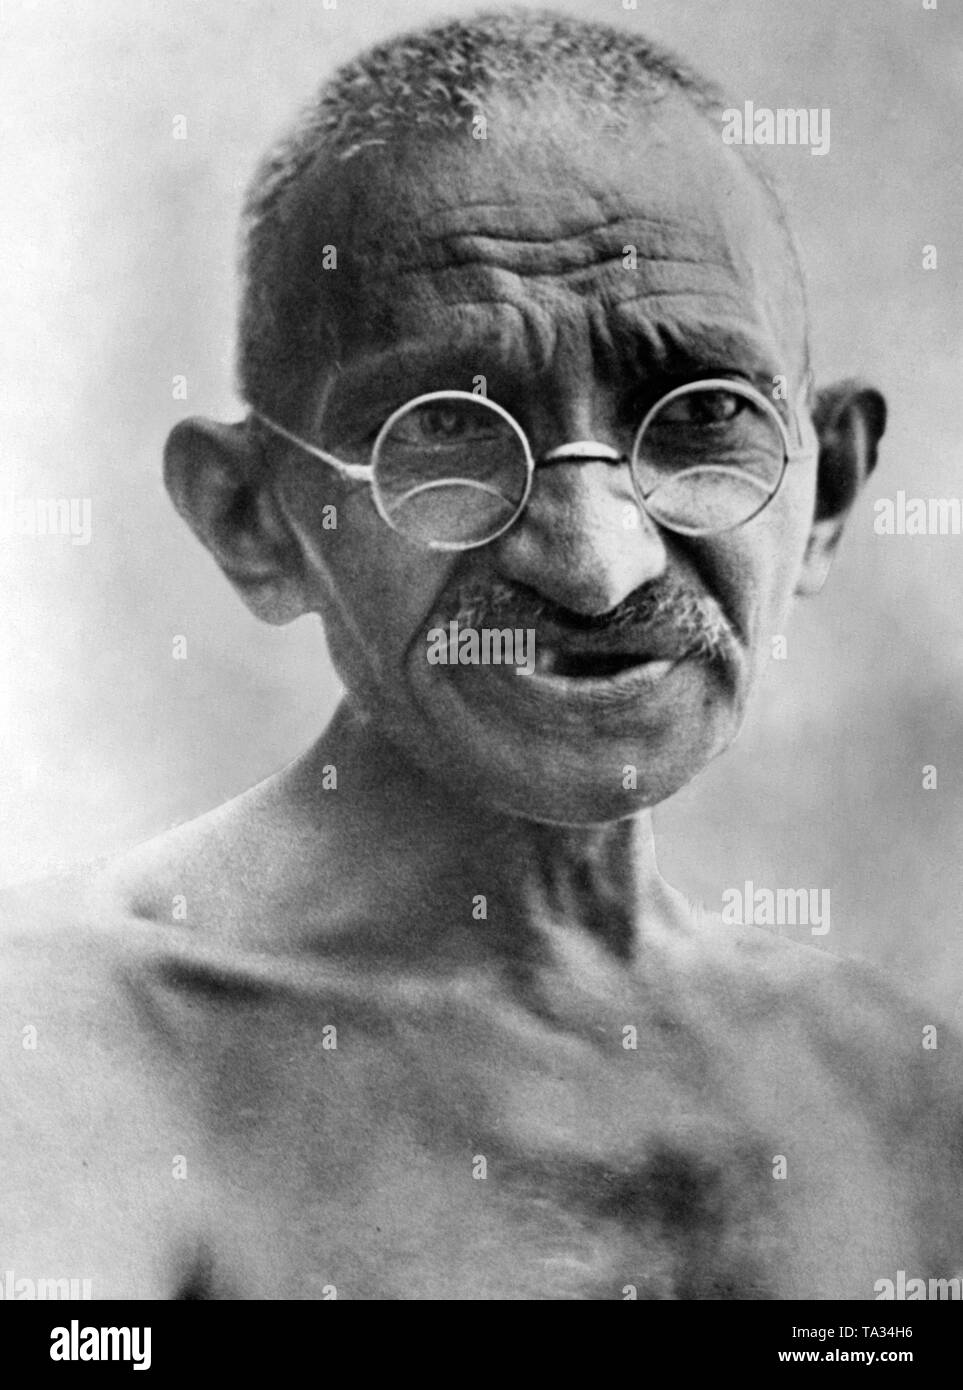 Le portrait montre le Mahatma Gandhi avant la Conférence de la Table ronde pour discuter des réformes constitutionnelles en Inde. Gandhi a été nommé plusieurs fois pour le prix Nobel de la paix au cours de sa vie. Banque D'Images